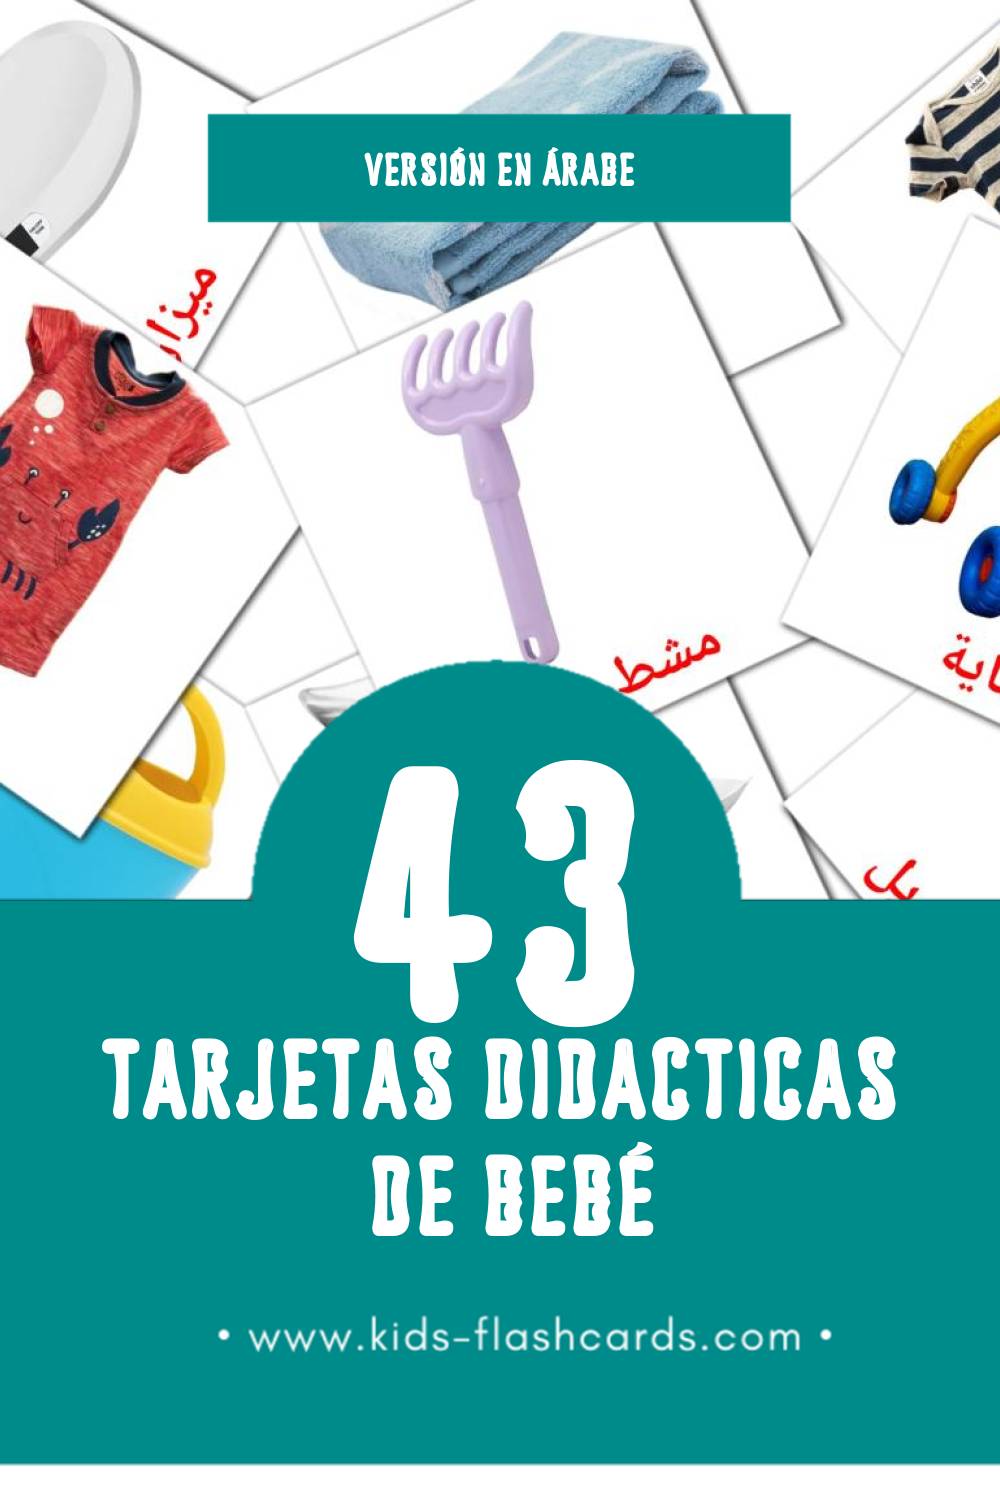 Tarjetas visuales de مولود para niños pequeños (43 tarjetas en Árabe)